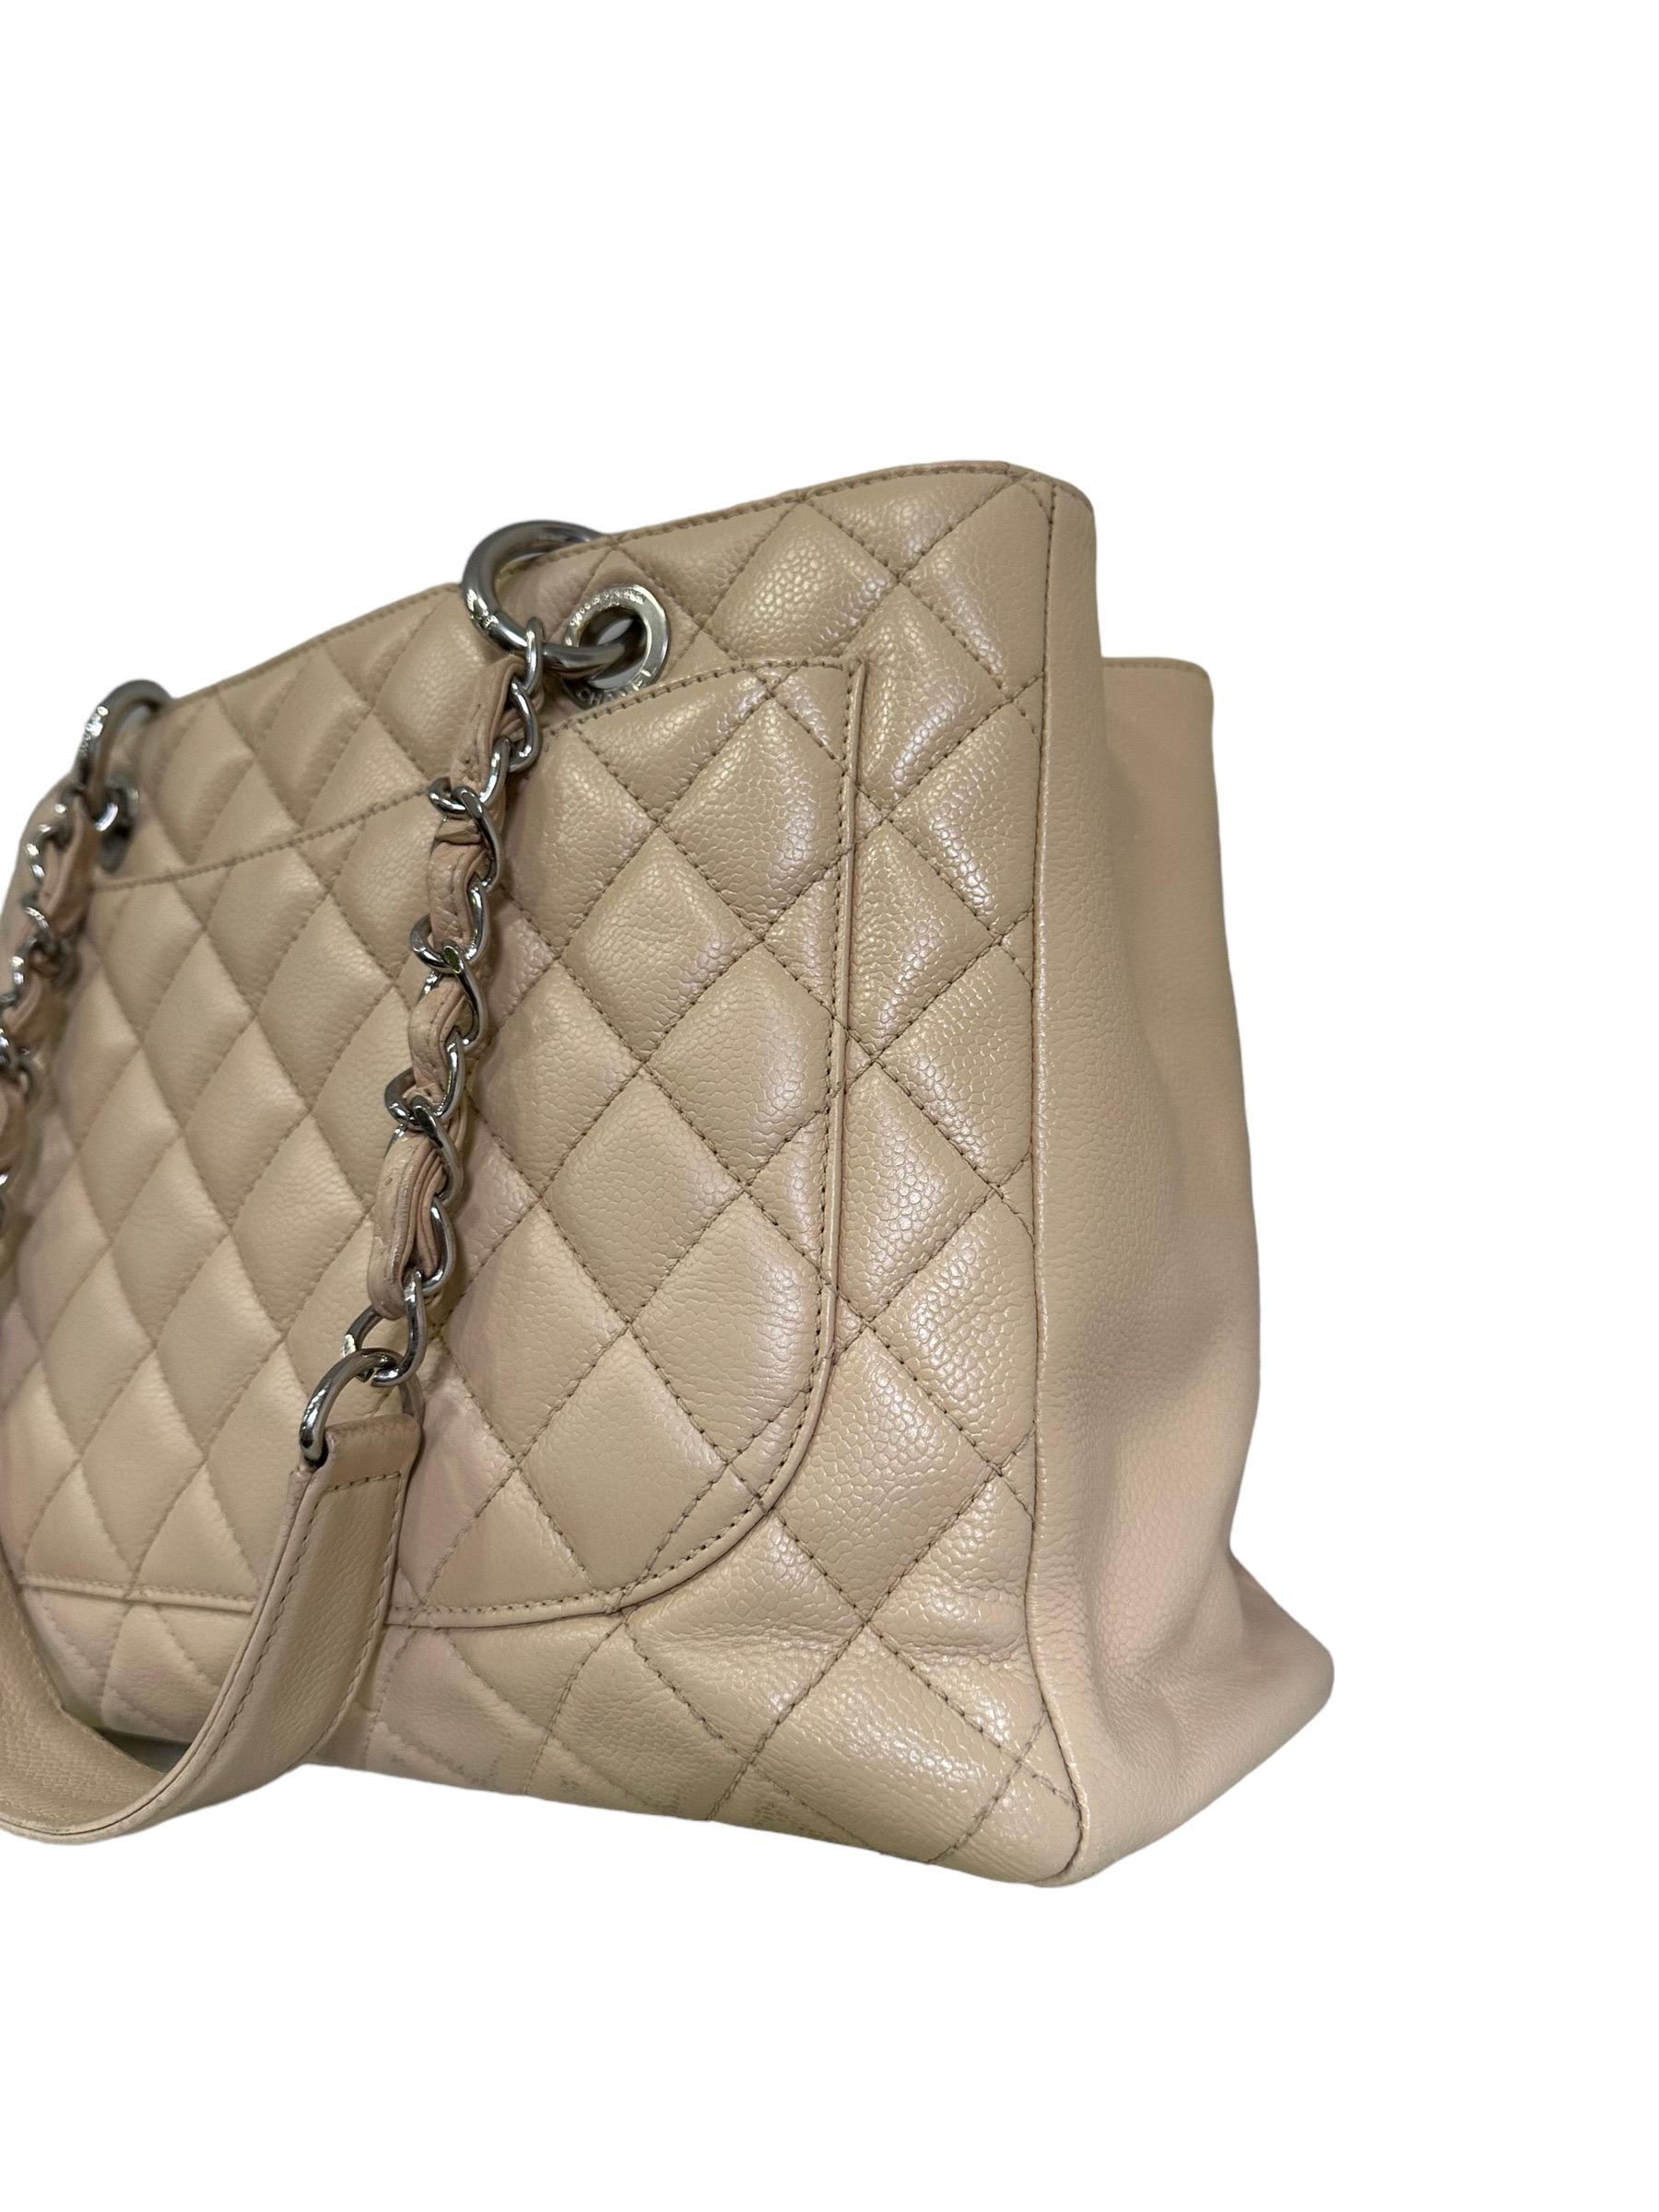 2014 Chanel Beige Leather GST Shoulder Bag For Sale 3